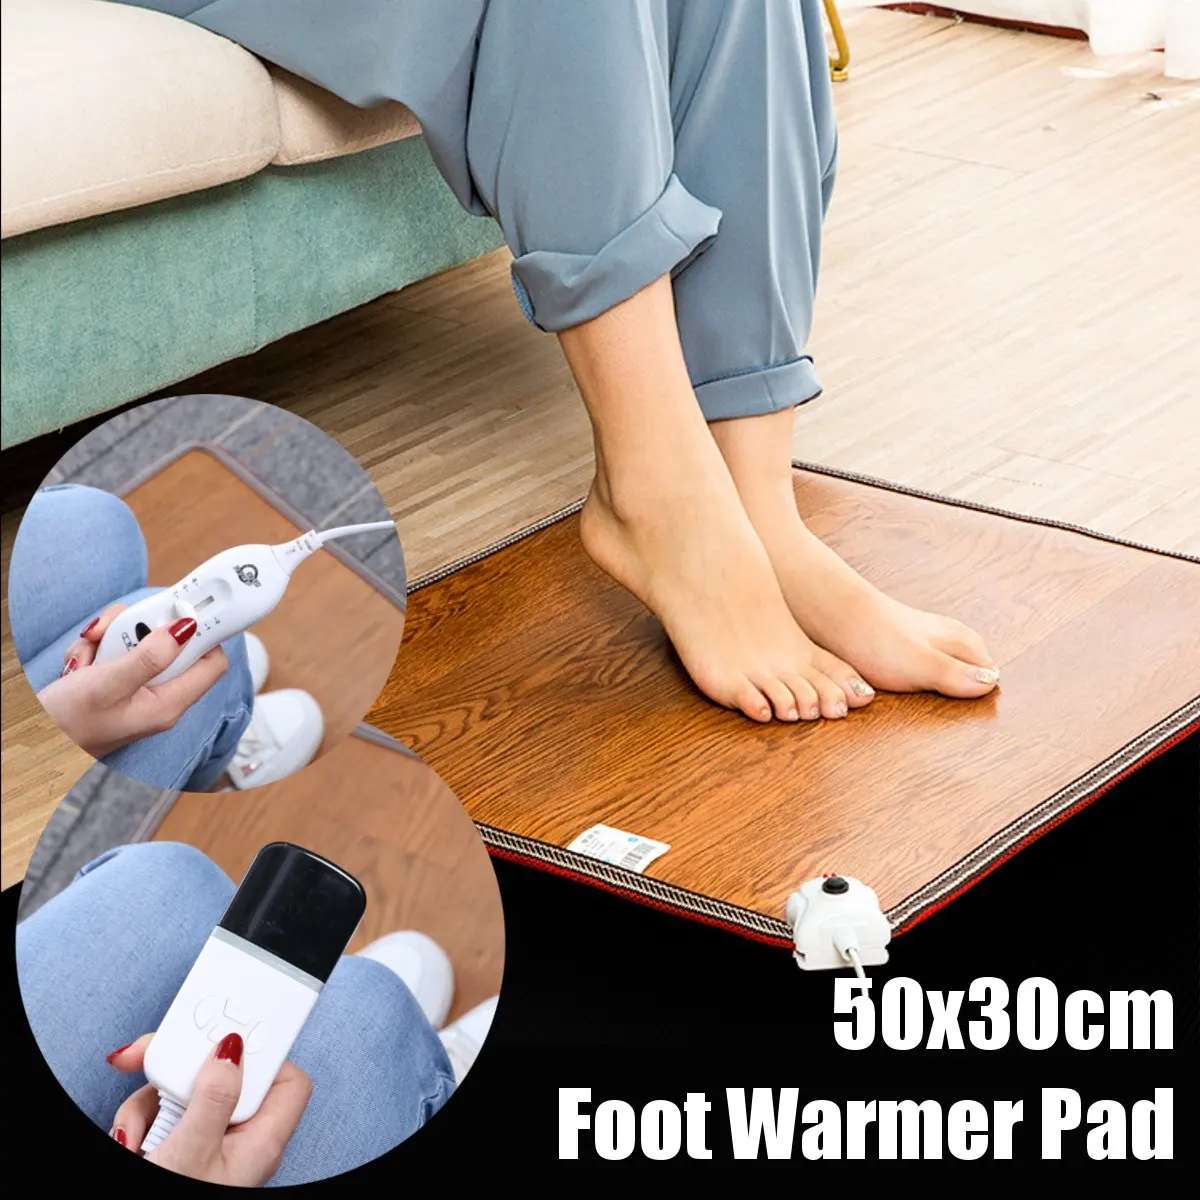 50x30cm רגל מתחמם חימום חשמלי שטיח למשרד חם רגל התרמוסטט החימום בבית שטיח רצפה מחוממת בחורף הגוף מתחמם כועס